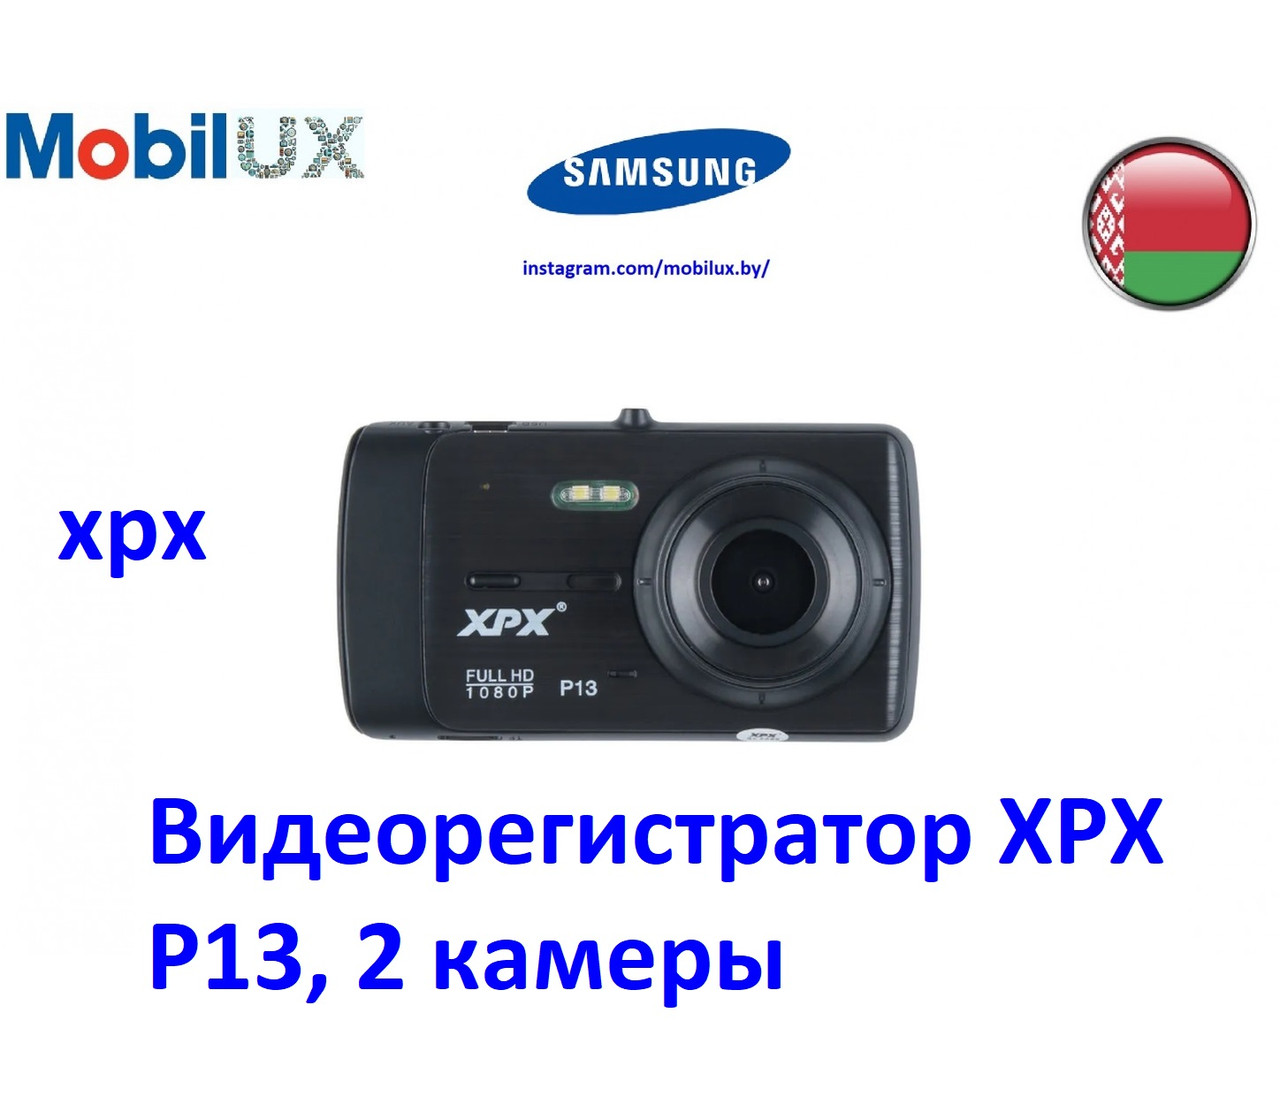 Видеорегистратор XPX P13, 2 камеры